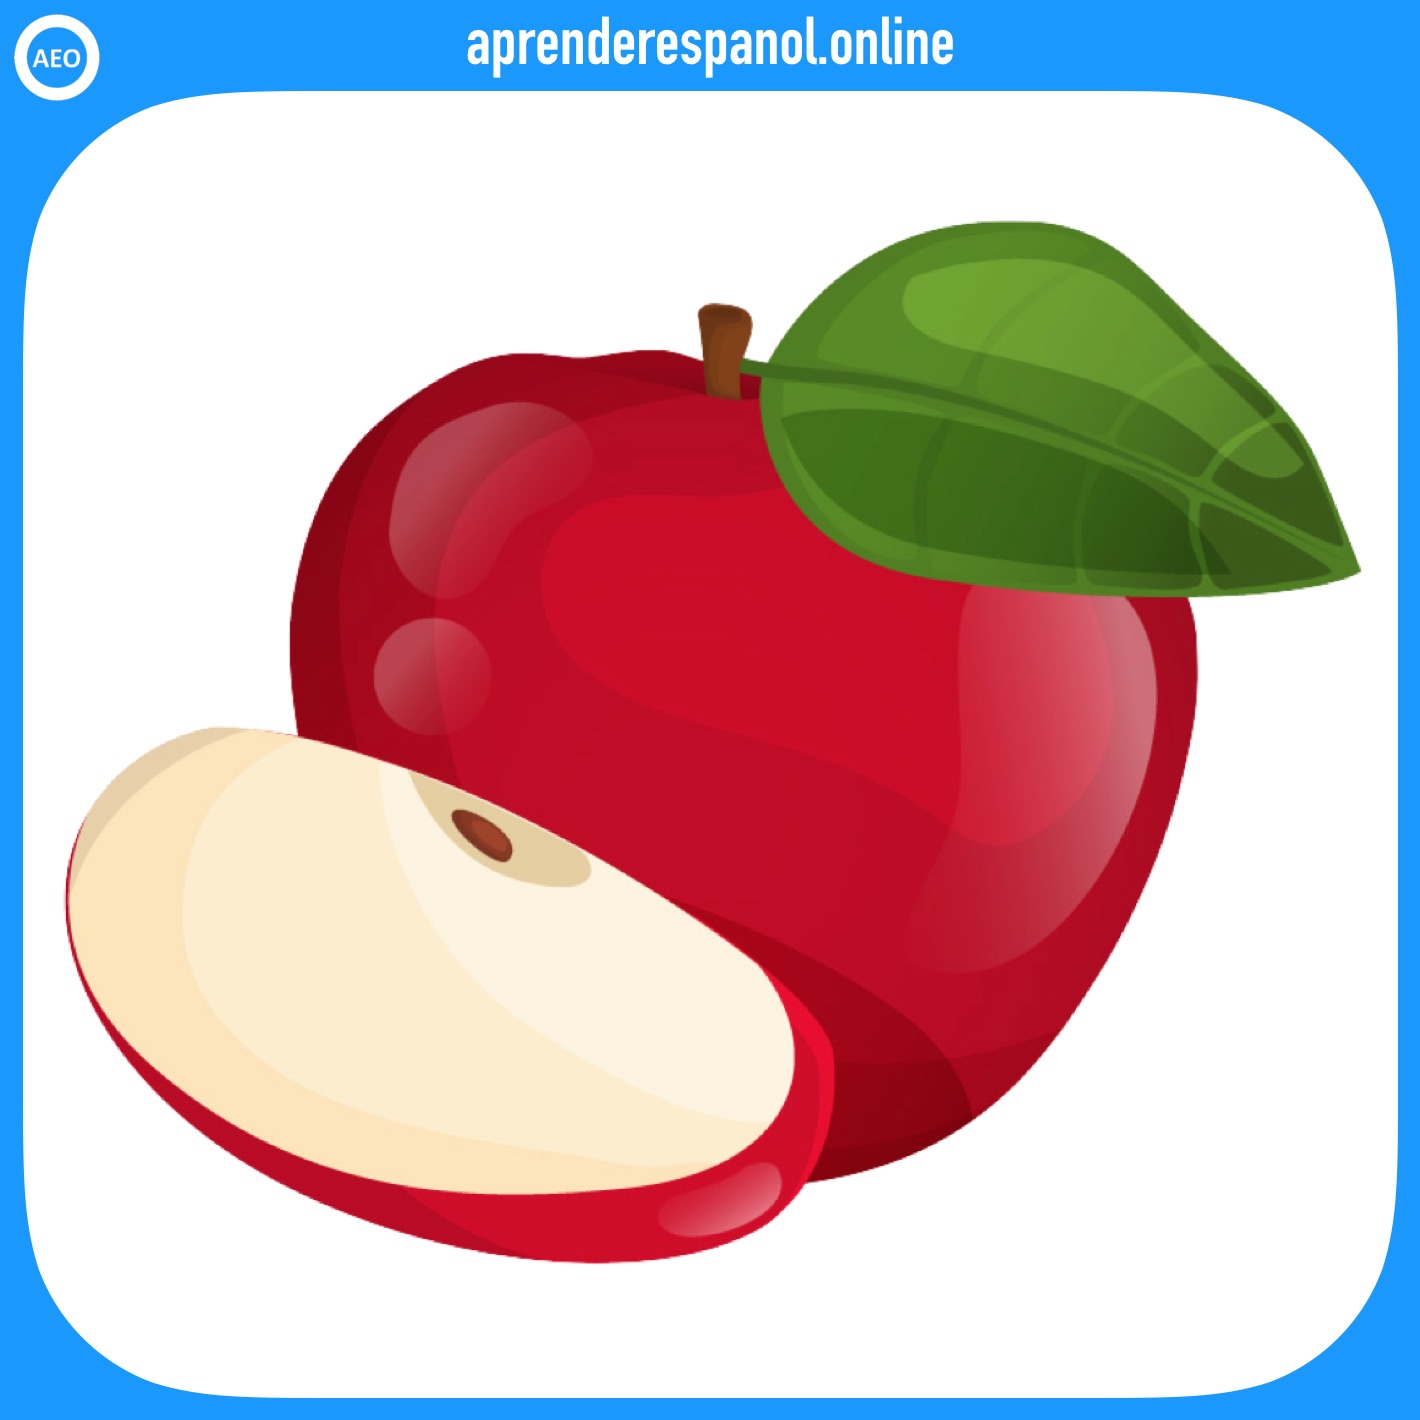 manzana - frutas en español - vocabulario de las frutas en español